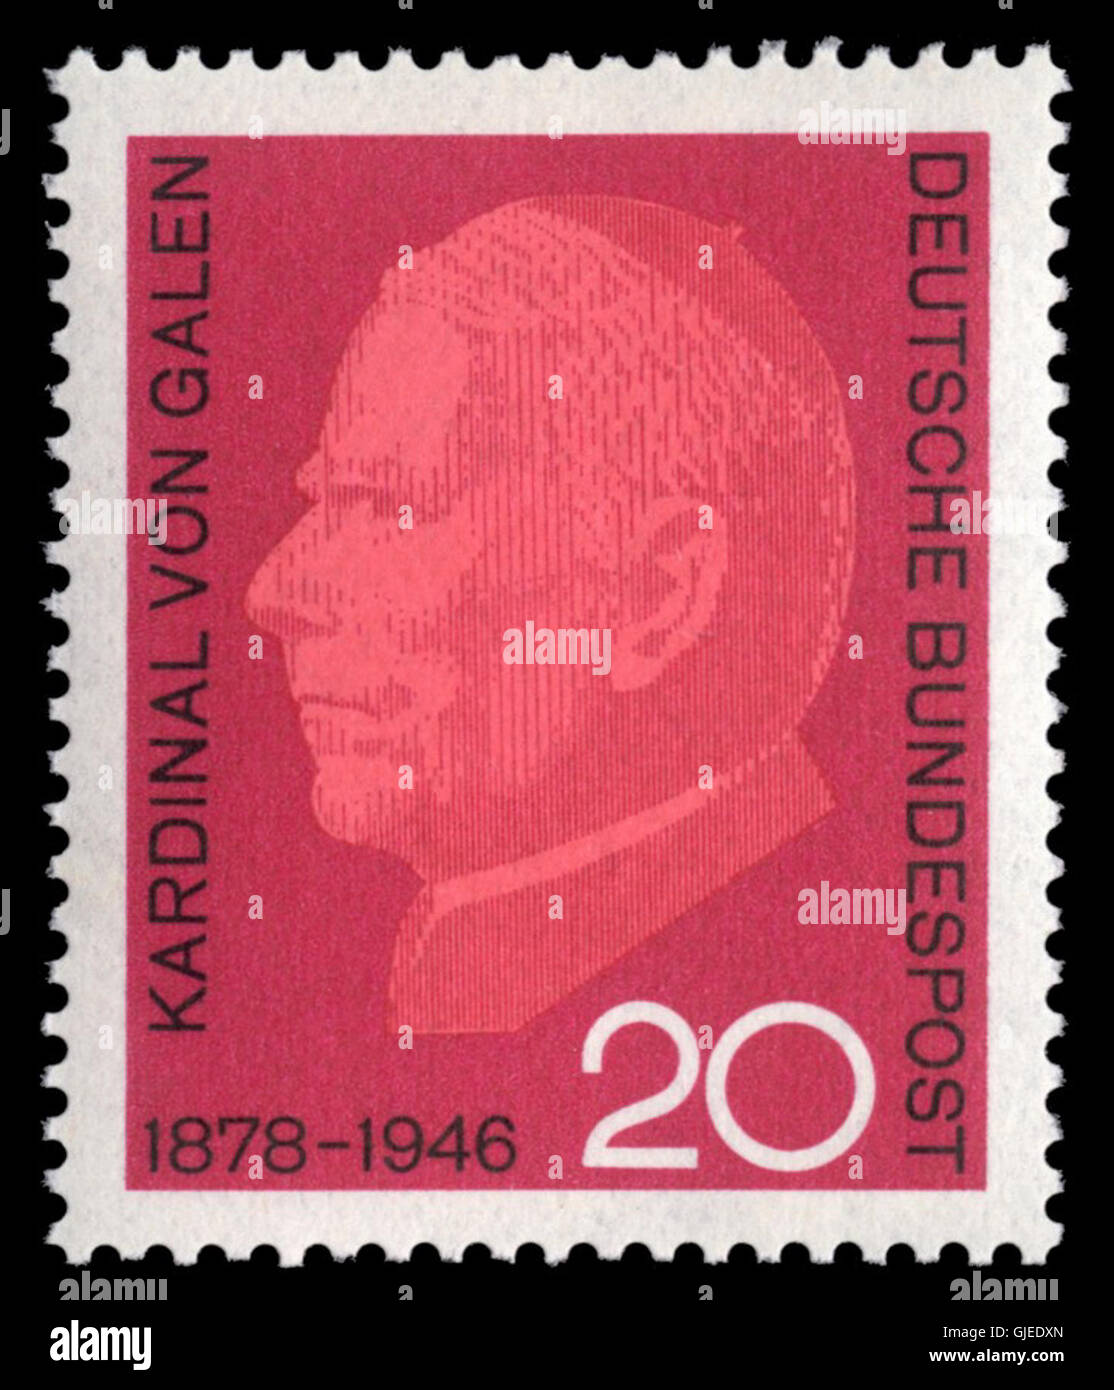 DBP 1966 505 Clemens August Graf von Galen Stock Photo